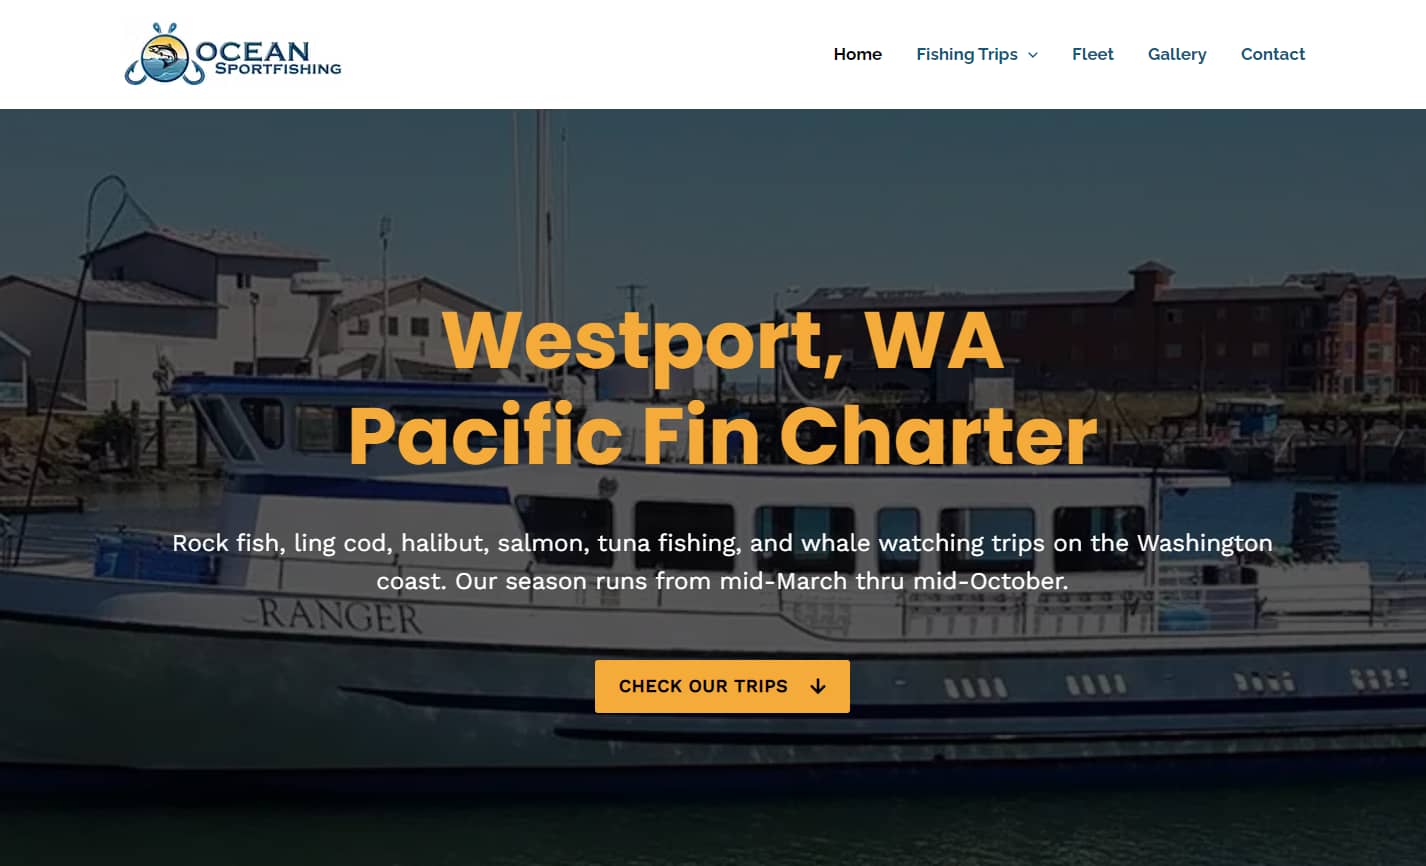 (c) Oceansportfishingcharters.com